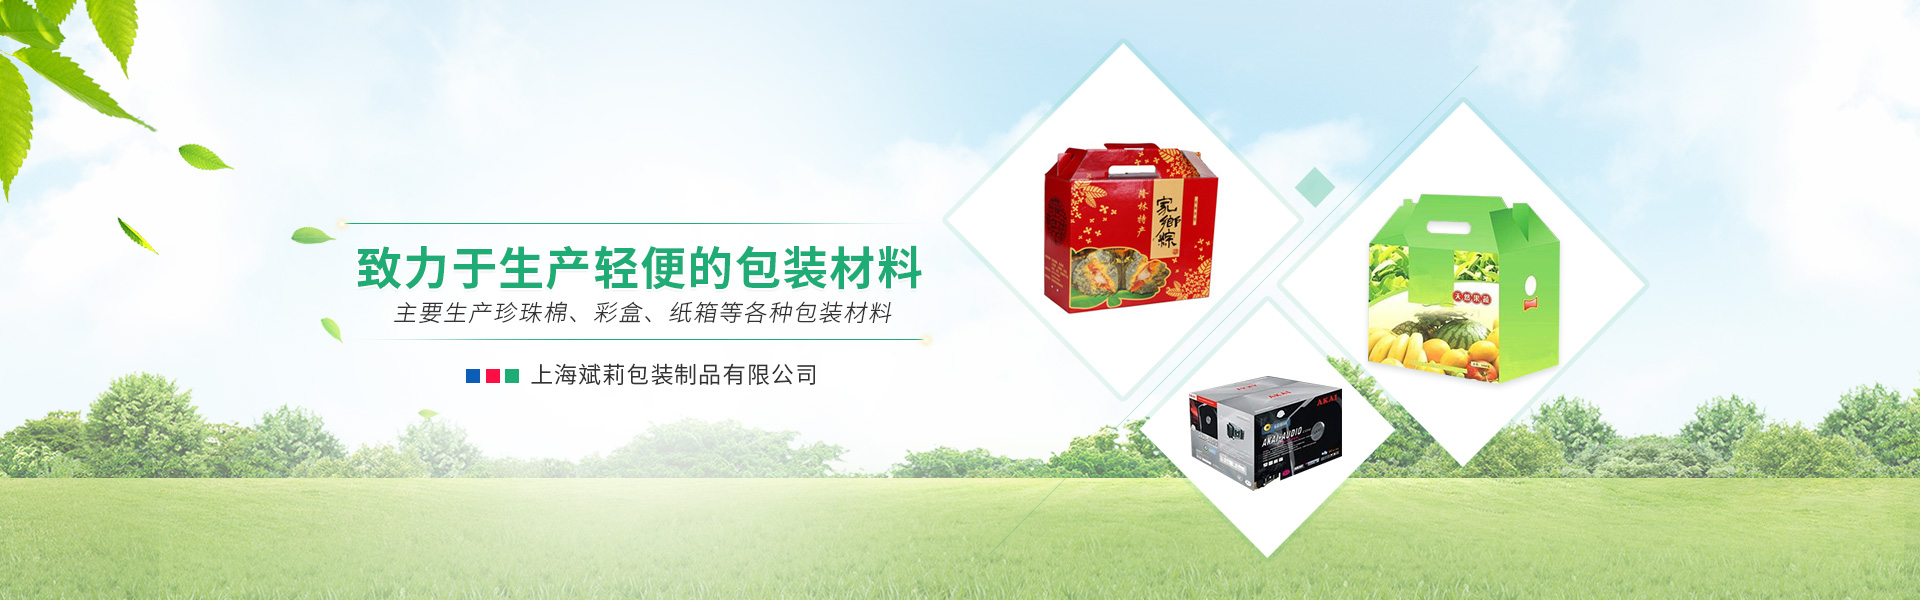 上海彩盒廠闡述彩盒包裝設計的基本特性